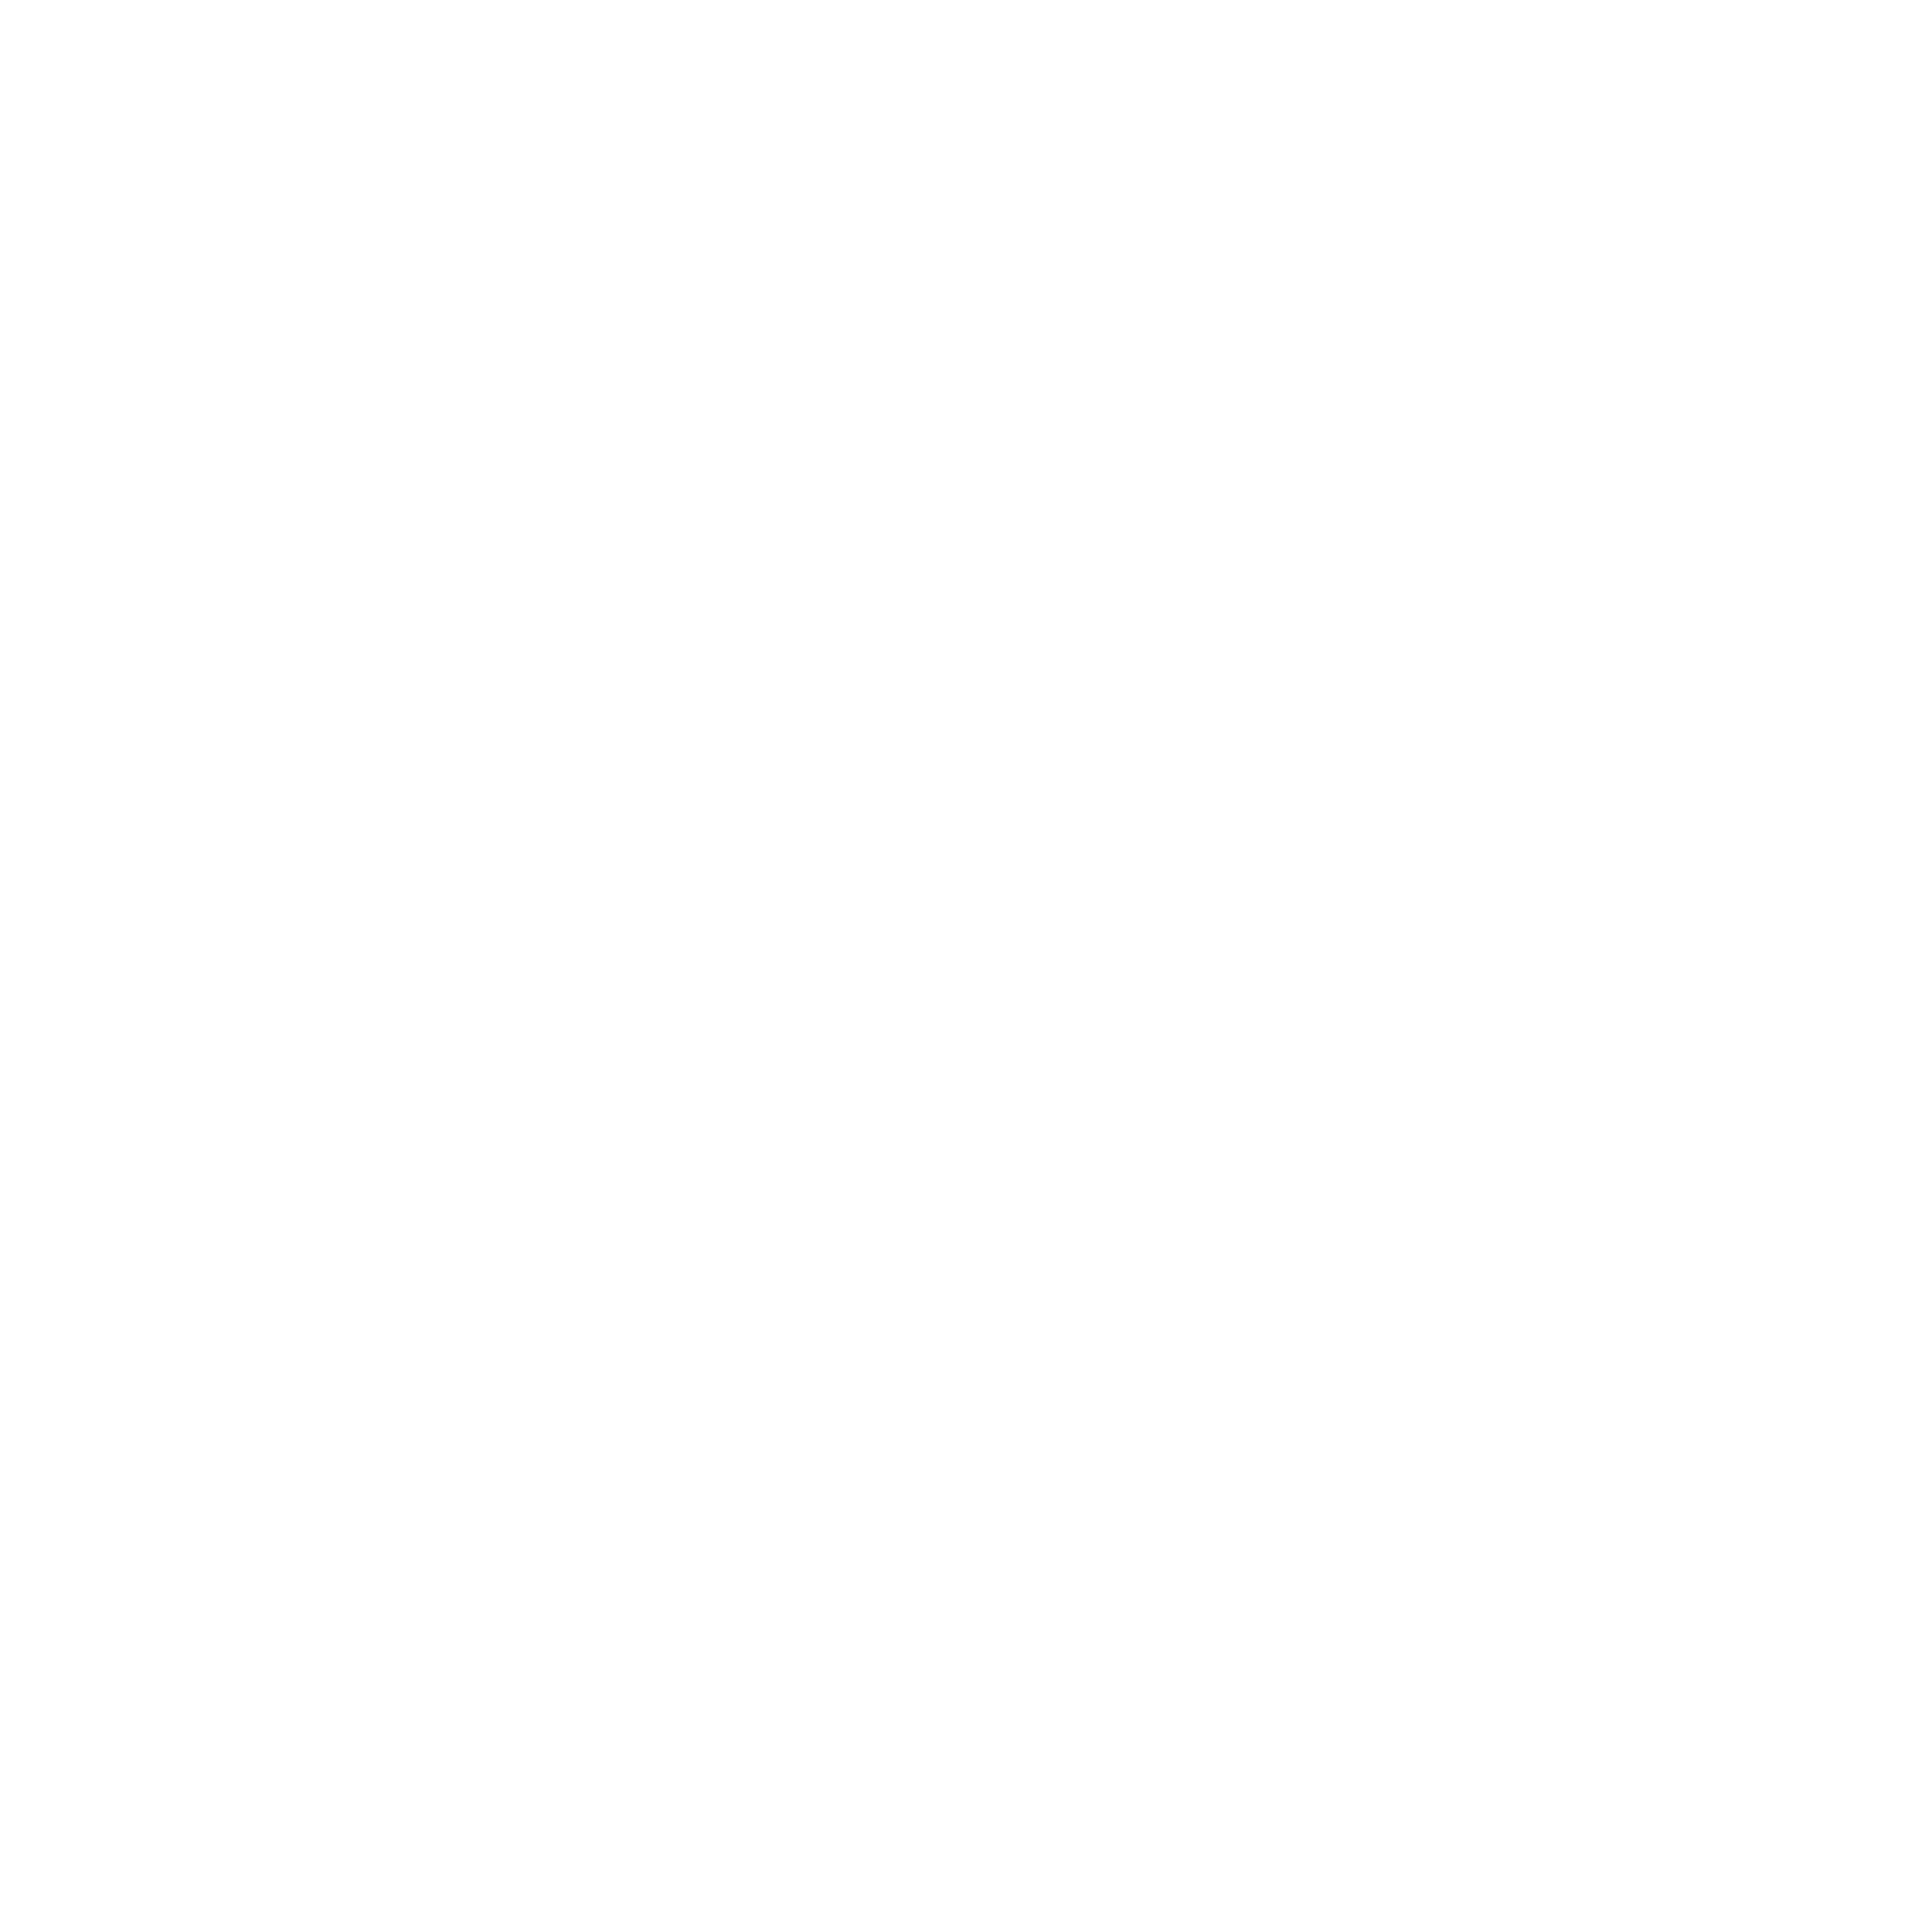 Everex Cryptocurrency icon